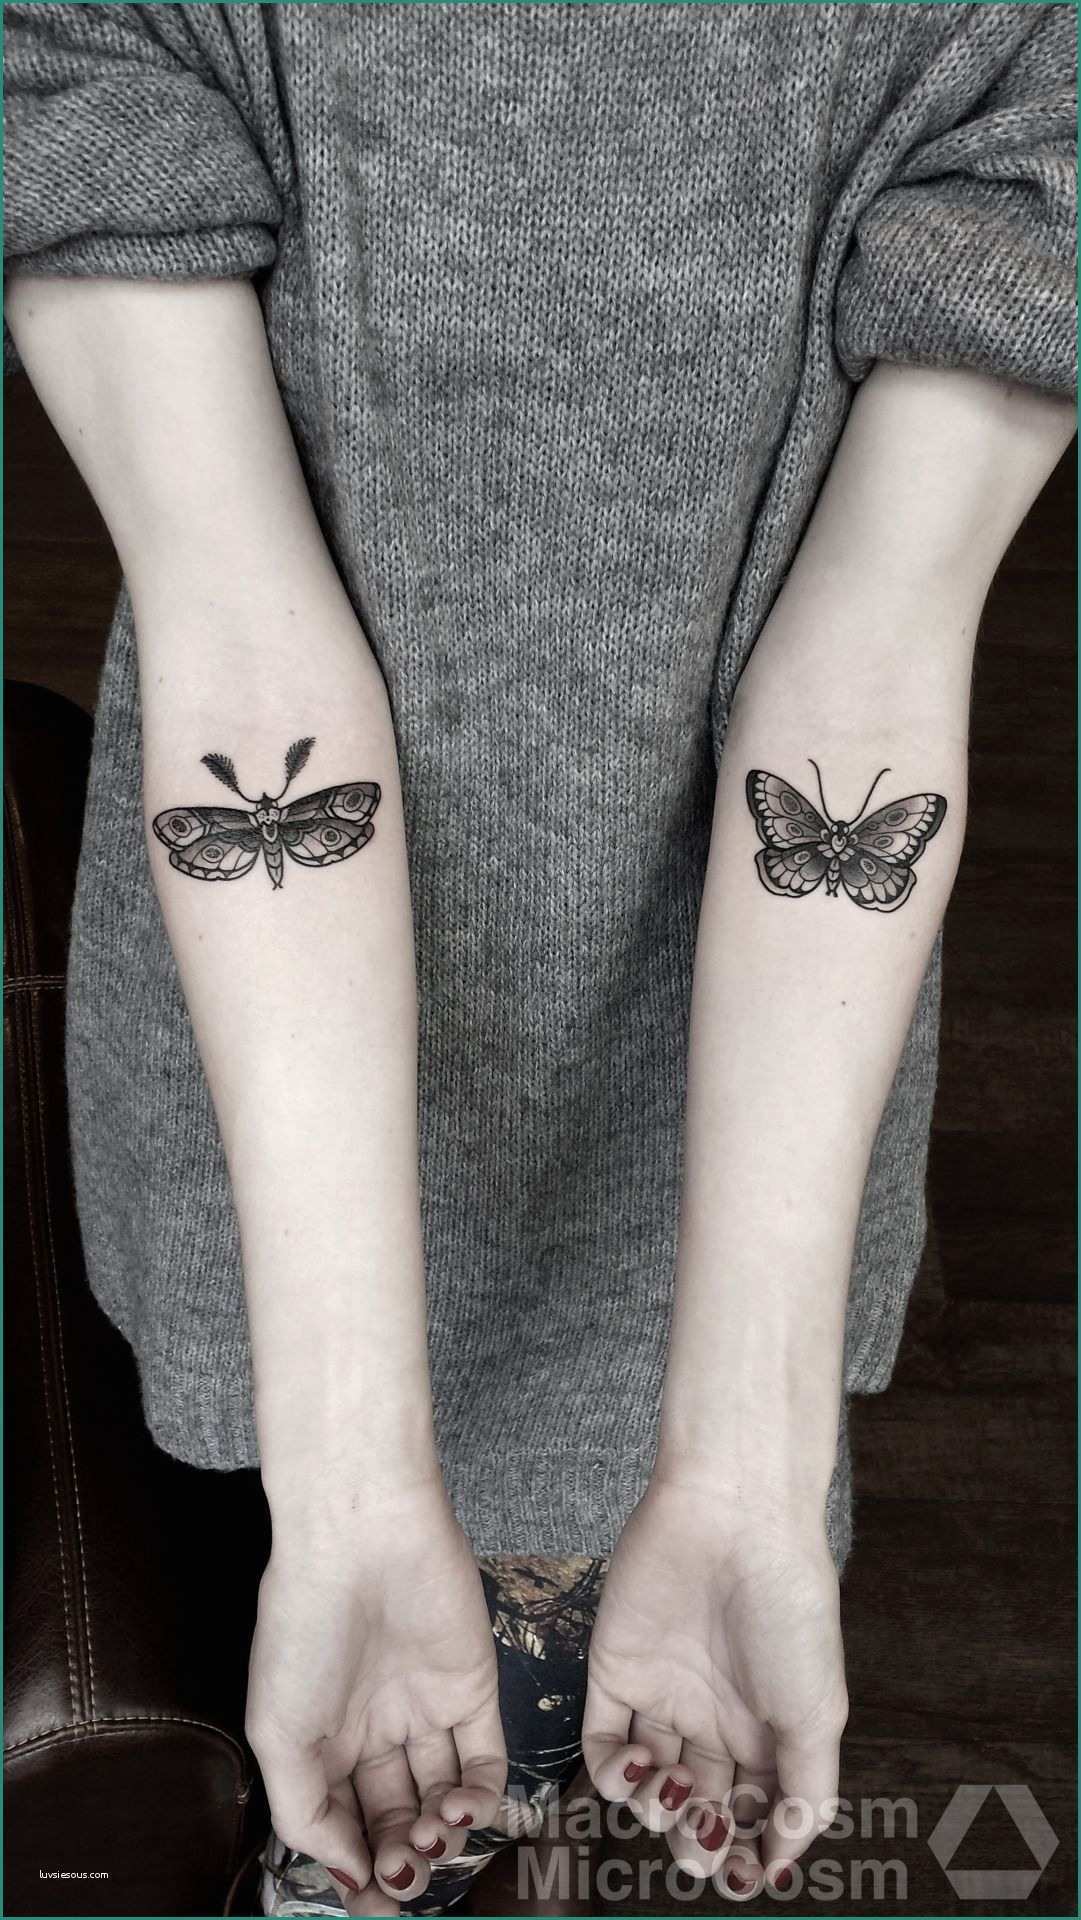 Immagini Di Farfalle Da Disegnare E Pin Di Kylie Kraatz Su Body Decorating Pinterest